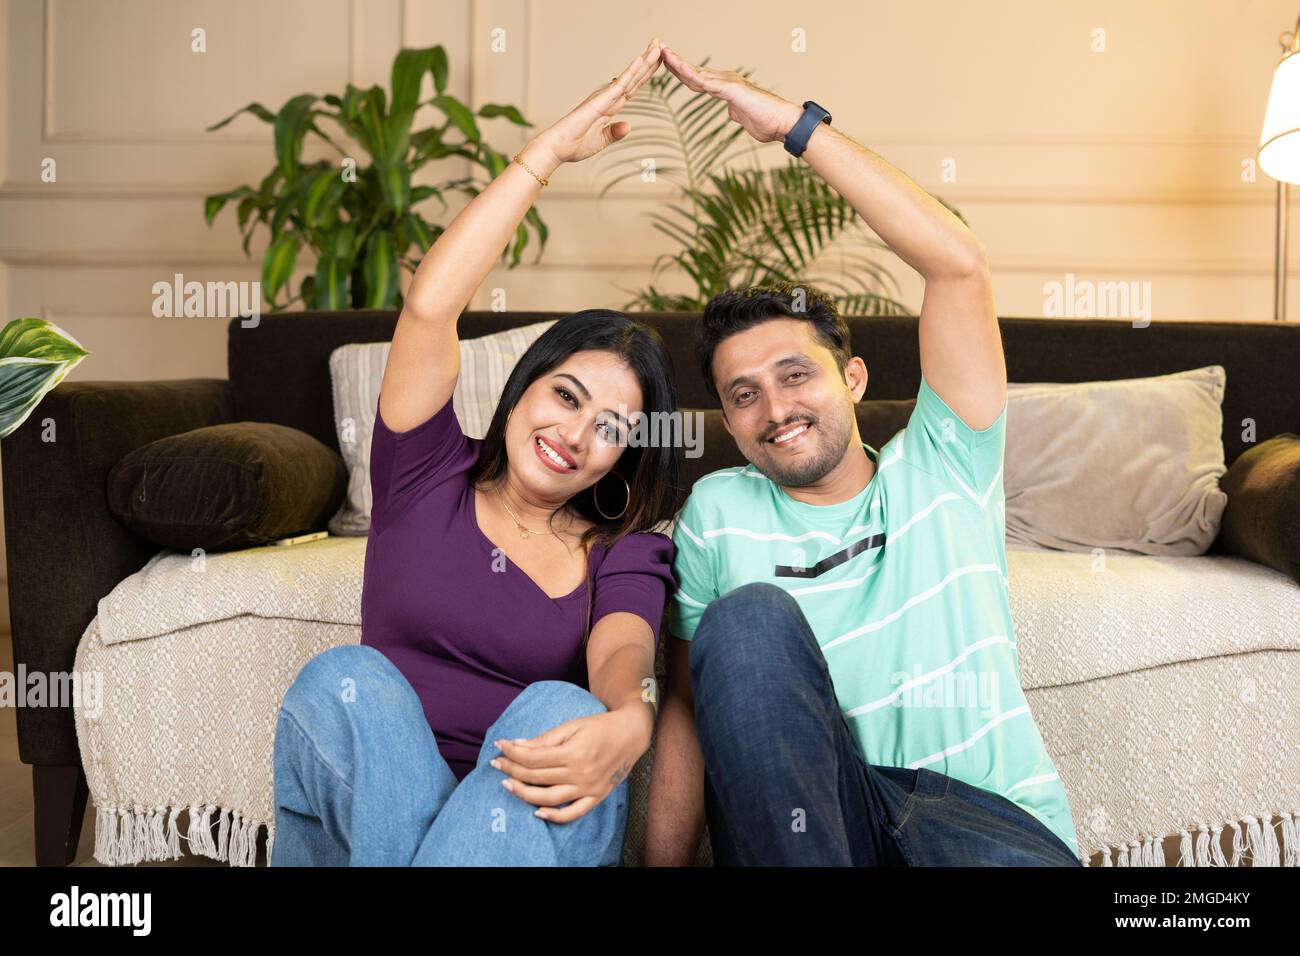 un couple souriant se montre heureux en faisant un geste sur le toit de la maison en joignant les mains tout en regardant l'appareil photo là-bas nouvelle maison ou appartement - concept de nouvelle maison Banque D'Images